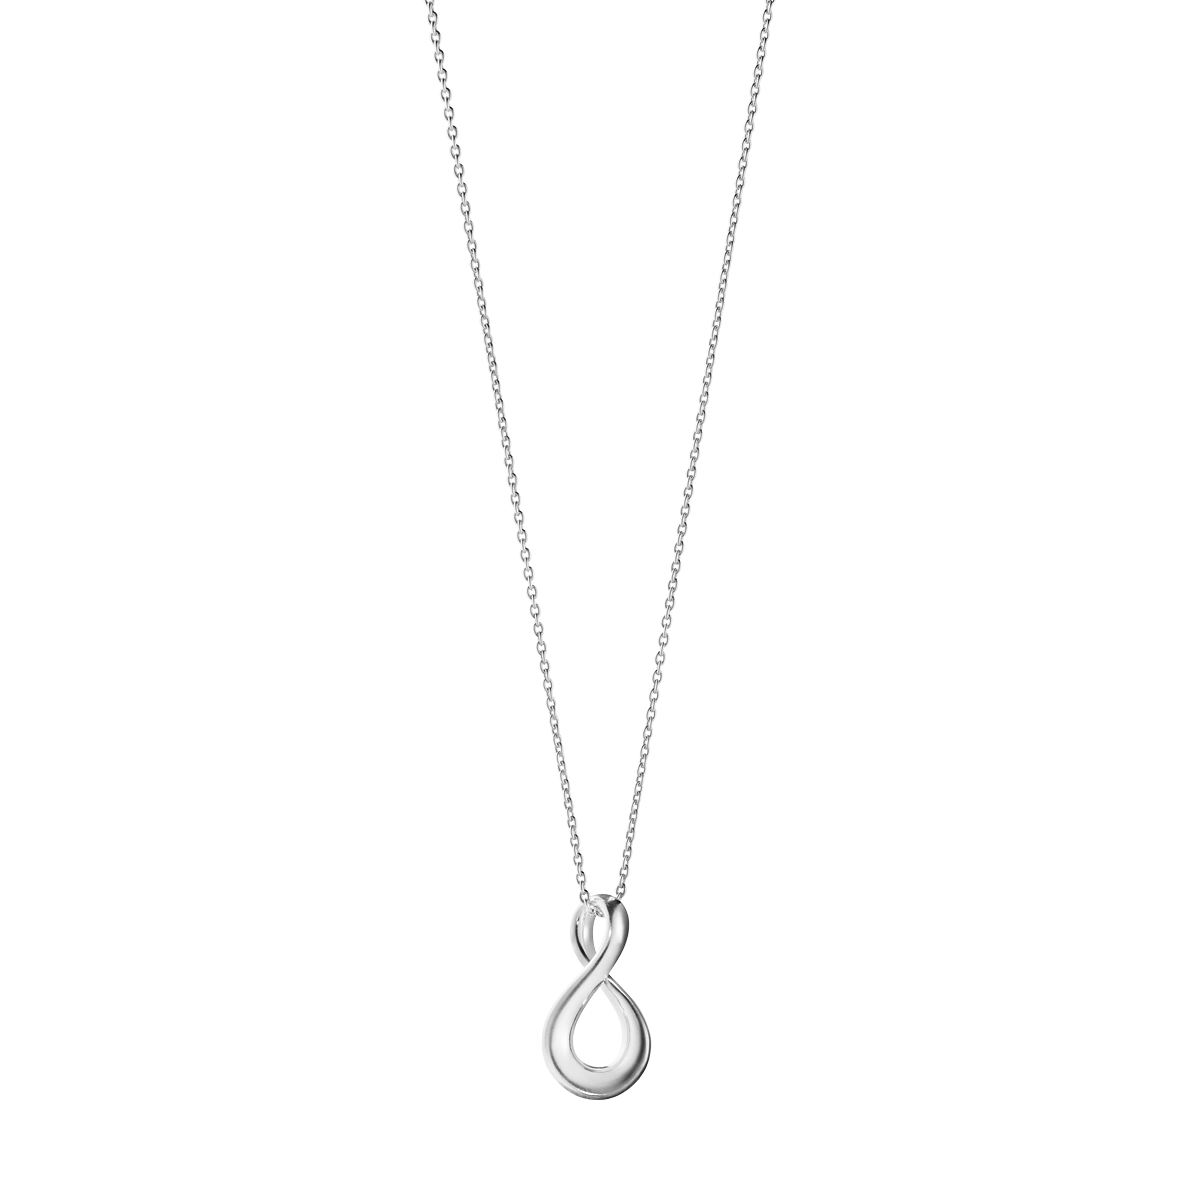 Infinity halskæde med vedhæng - sølv fra Georg Jensen